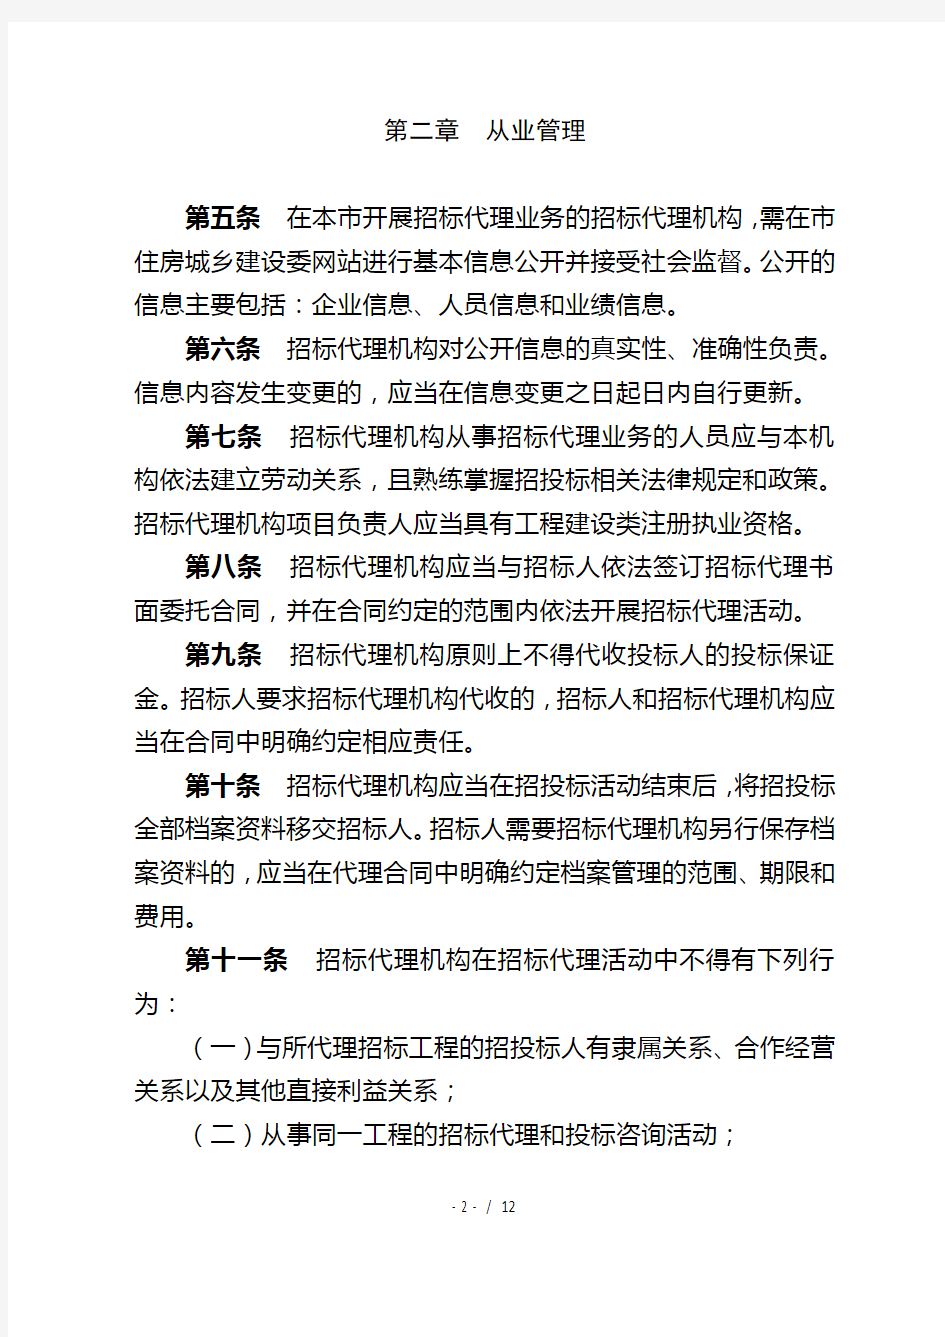 北京市建设工程招标代理机构管理办法(试行)